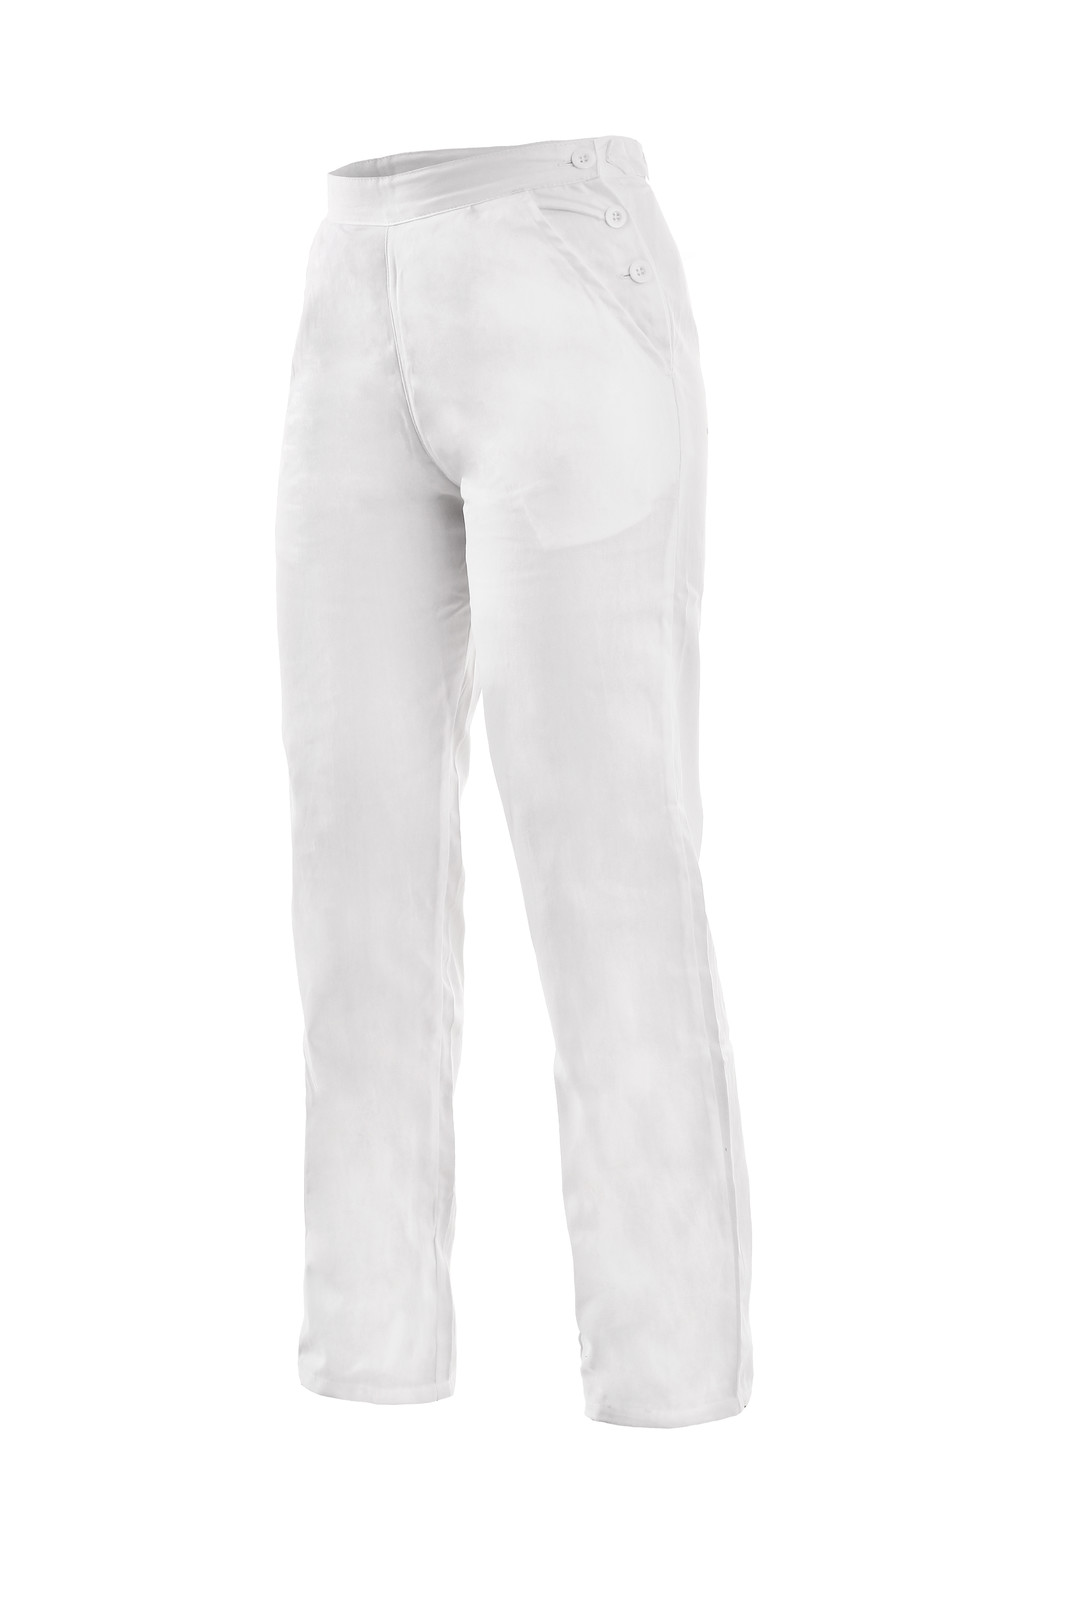 Dámske biele bavlnené nohavice Darja - veľkosť: 46, farba: biela